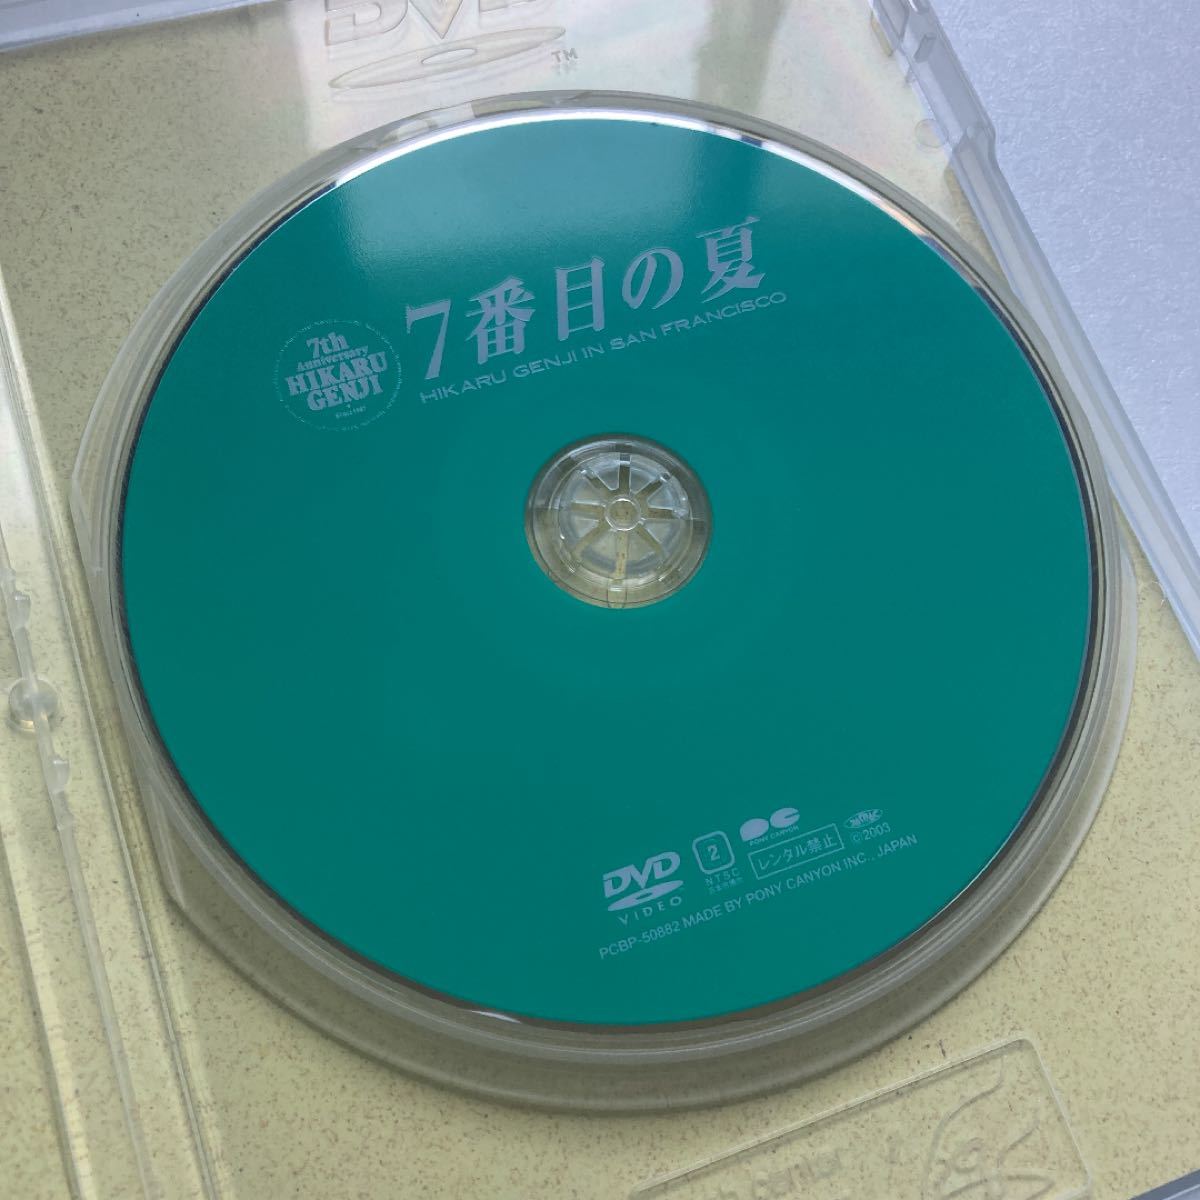 光GENJI DVD 7番目の夏